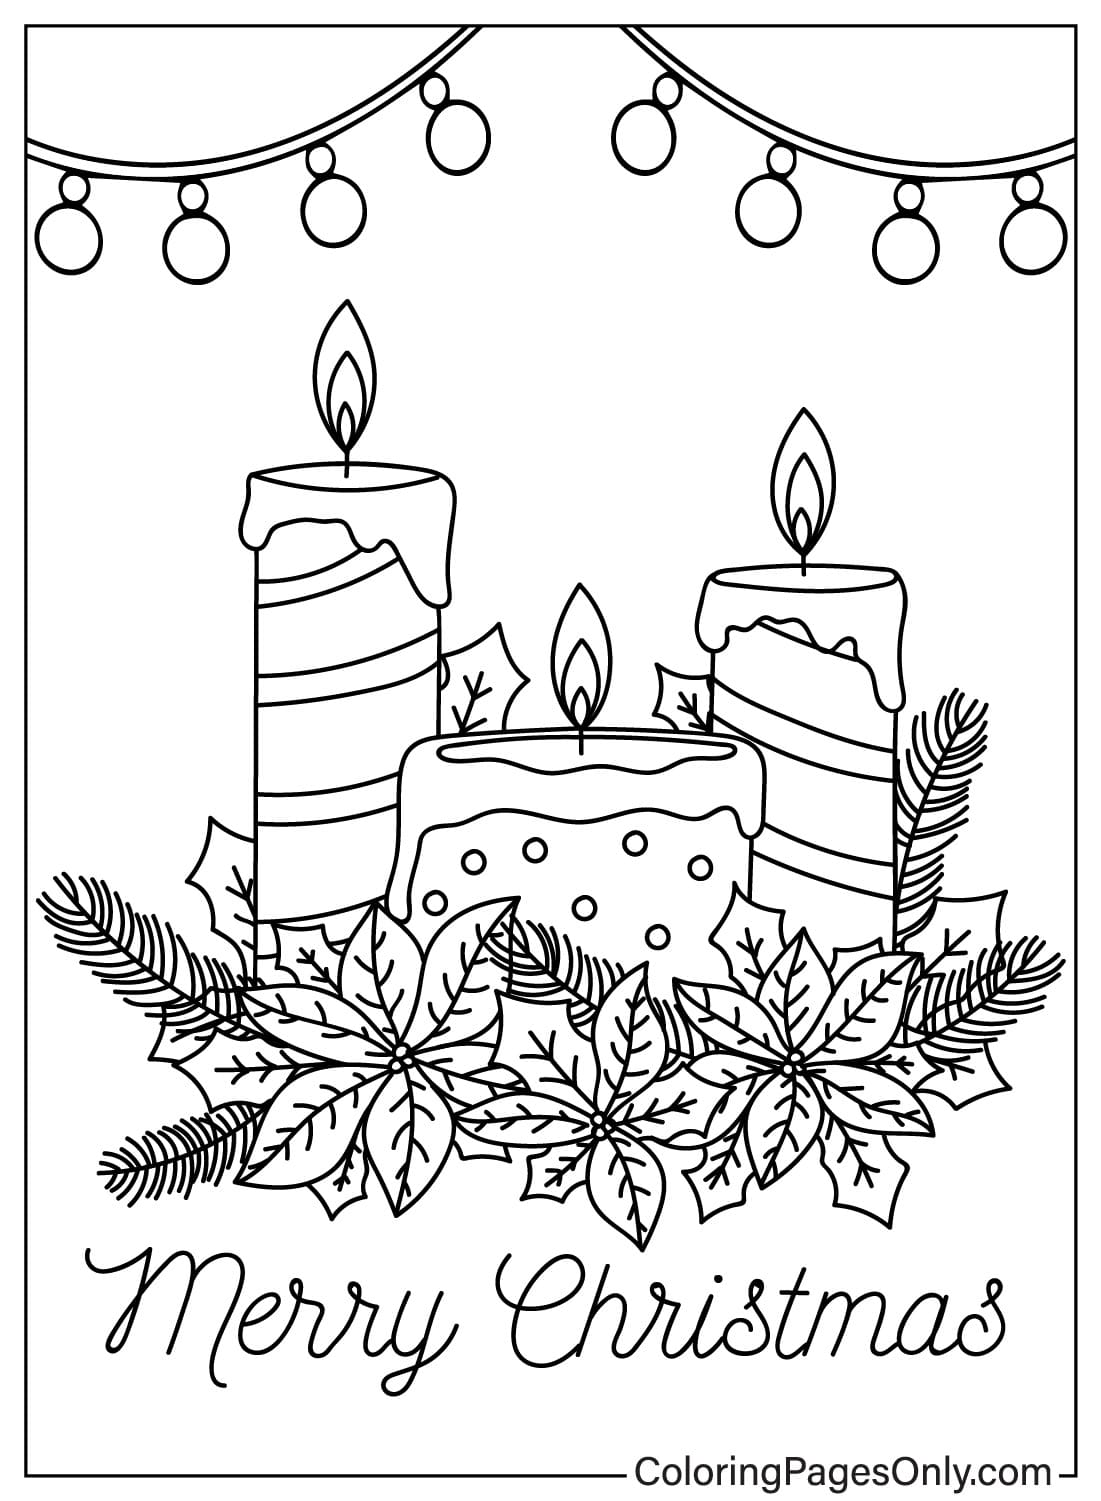 Página para colorir de velas de Natal de fotos de velas de Natal